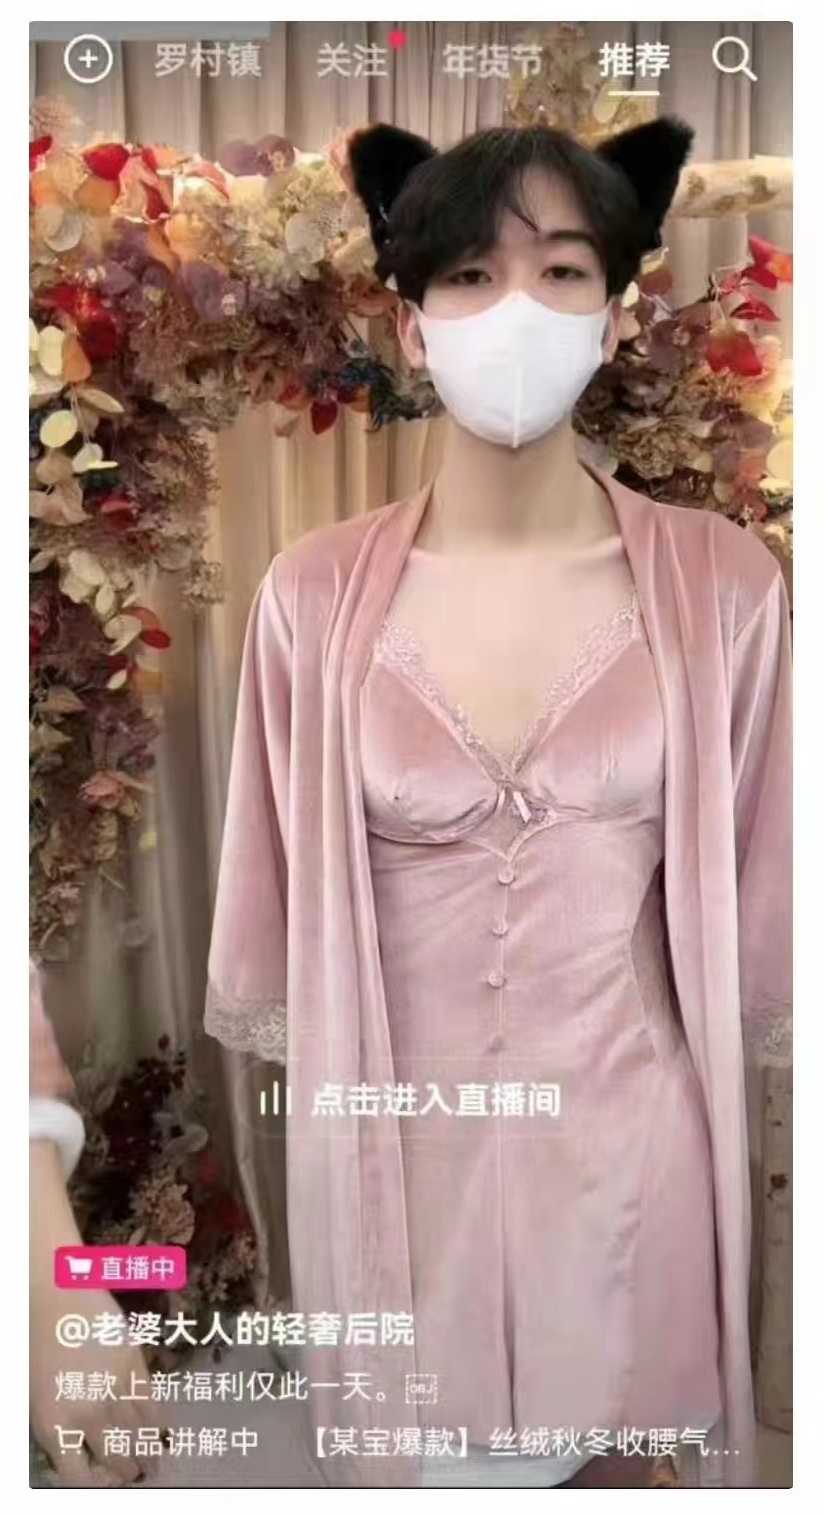 แบบนี้ไม่อนาจาร? ร้านจีนผุดไอเดียใช้ "ผู้ชาย" ไลฟ์ขายชุดชั้นในสตรี เลี่ยงโดนแบน